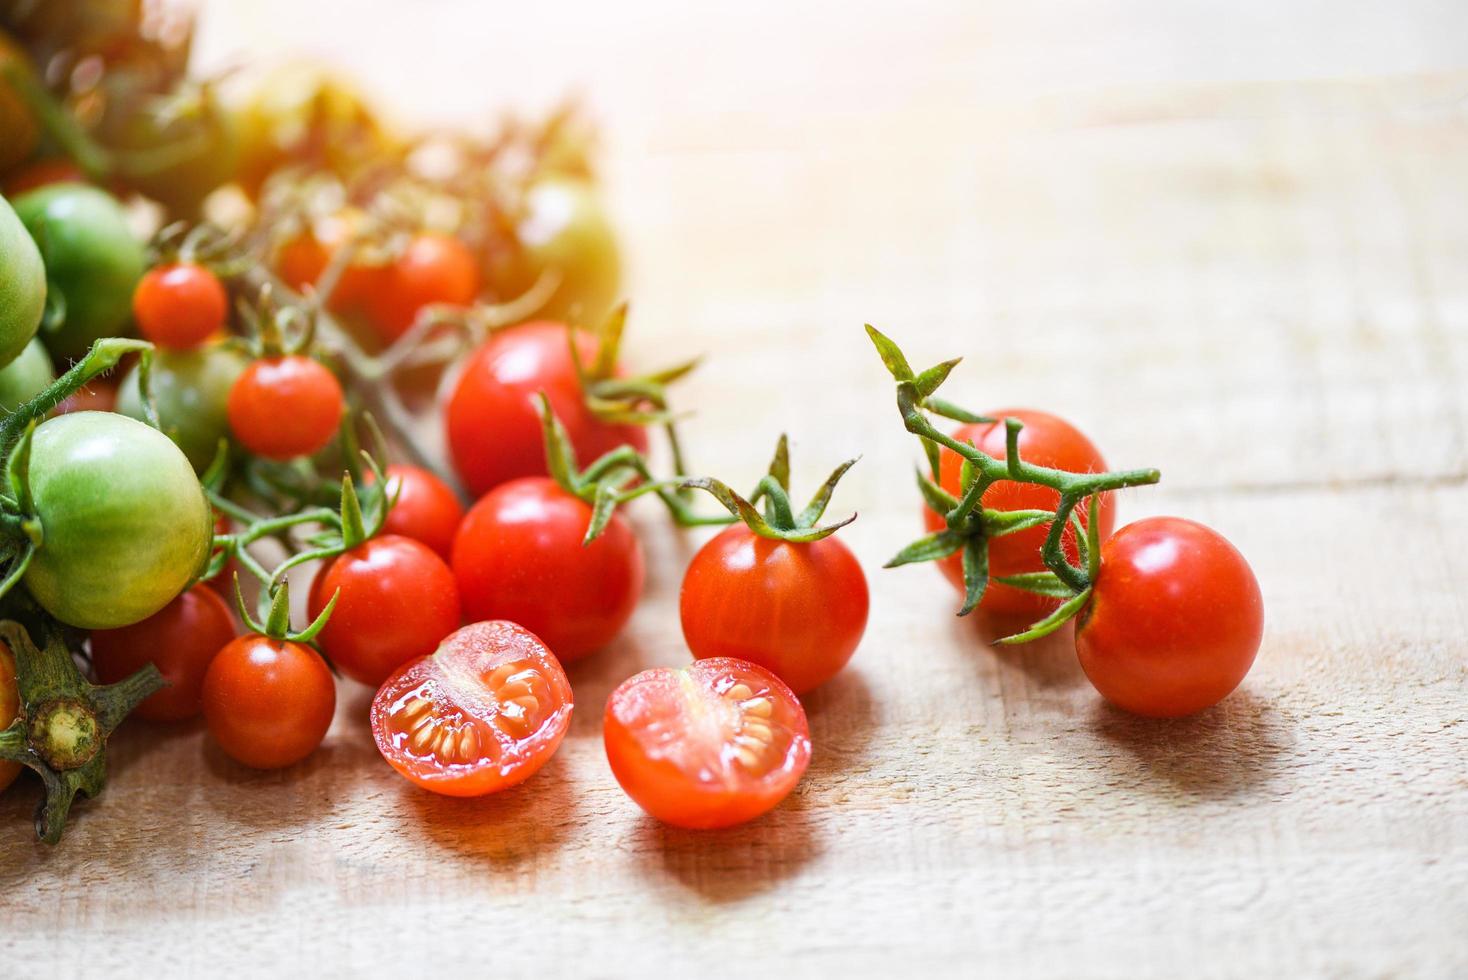 cosecha de tomate fresco orgánico con tomates rojos verdes y maduros en madera foto